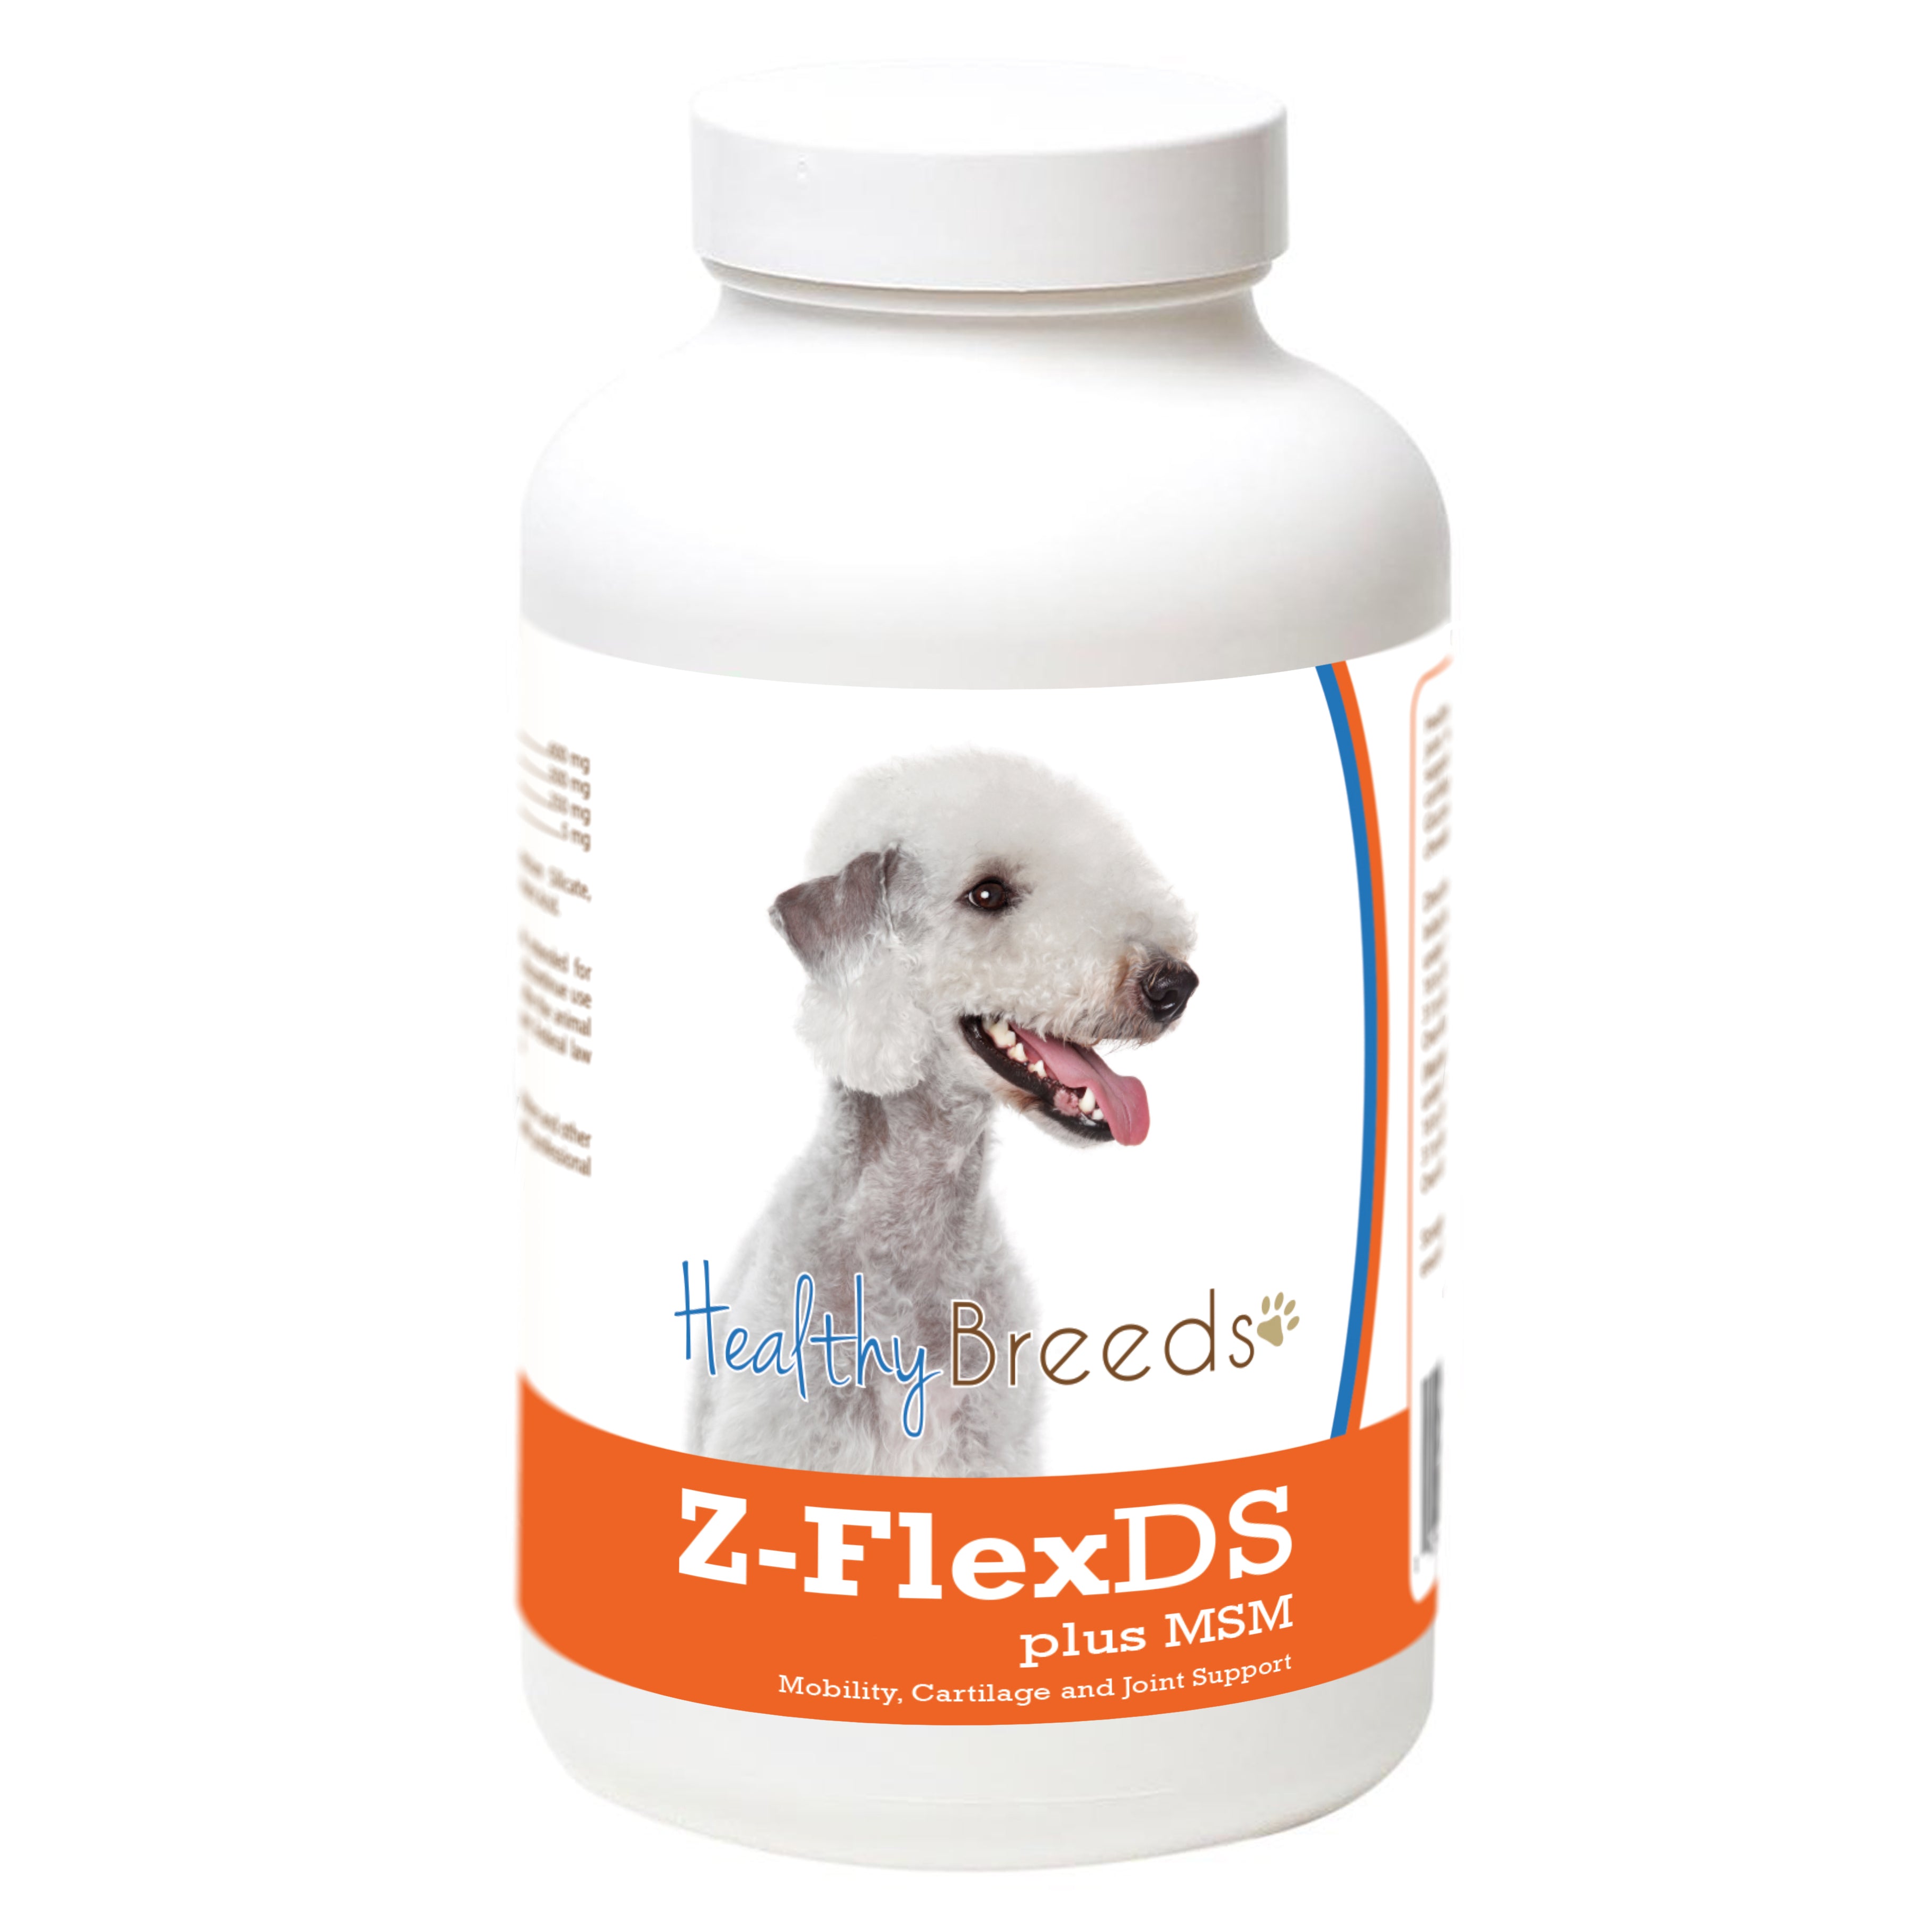 Bedlington Terrier Z-FlexDS plus MSM Chewable Tablets 60 Count